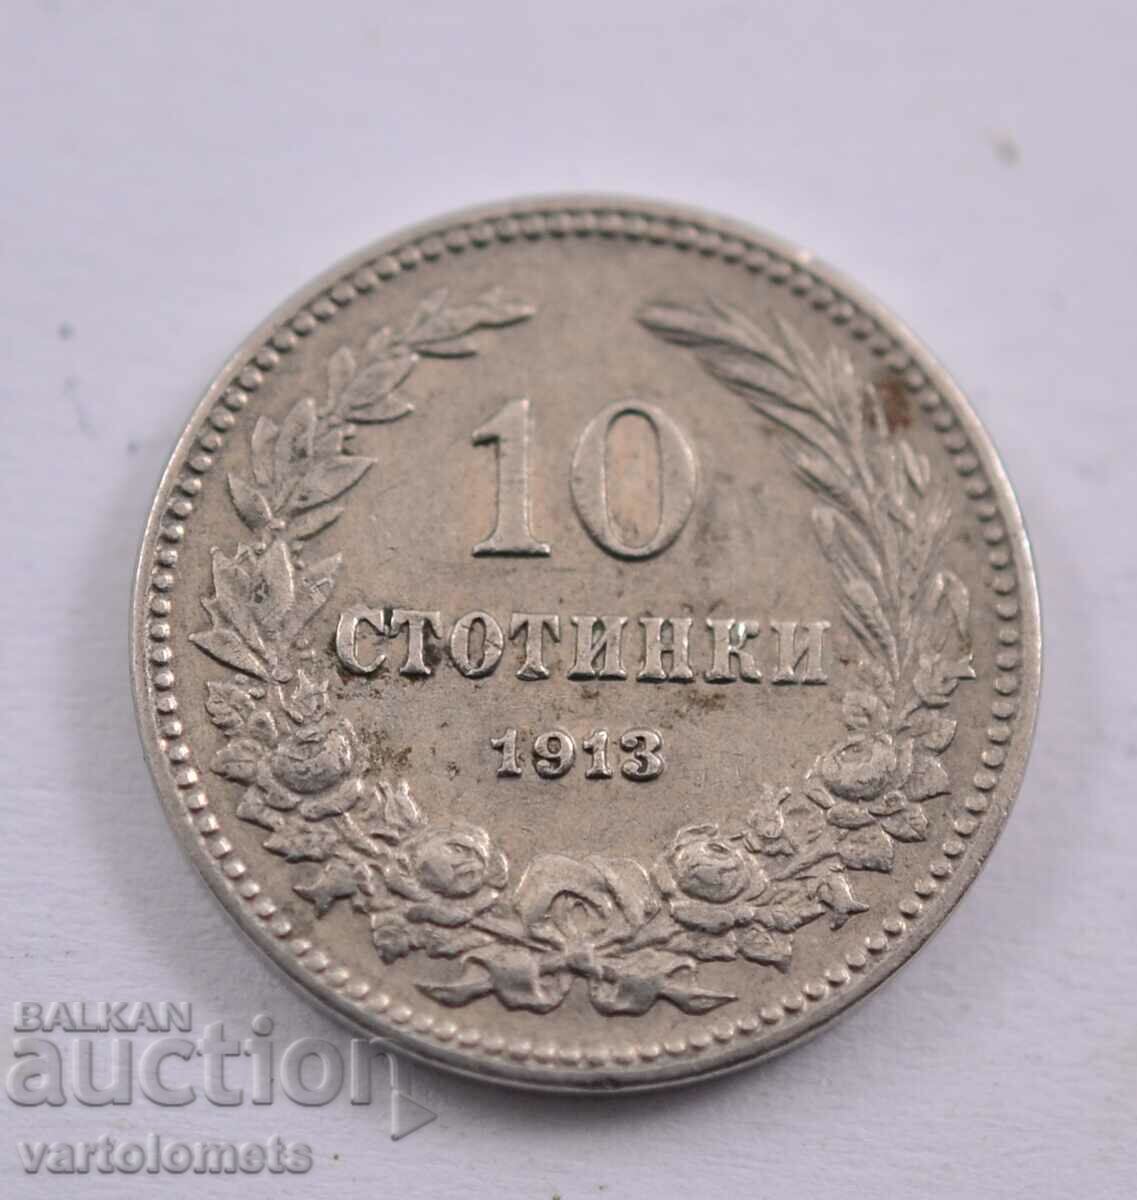 10 stotinki 1913 - Bulgaria